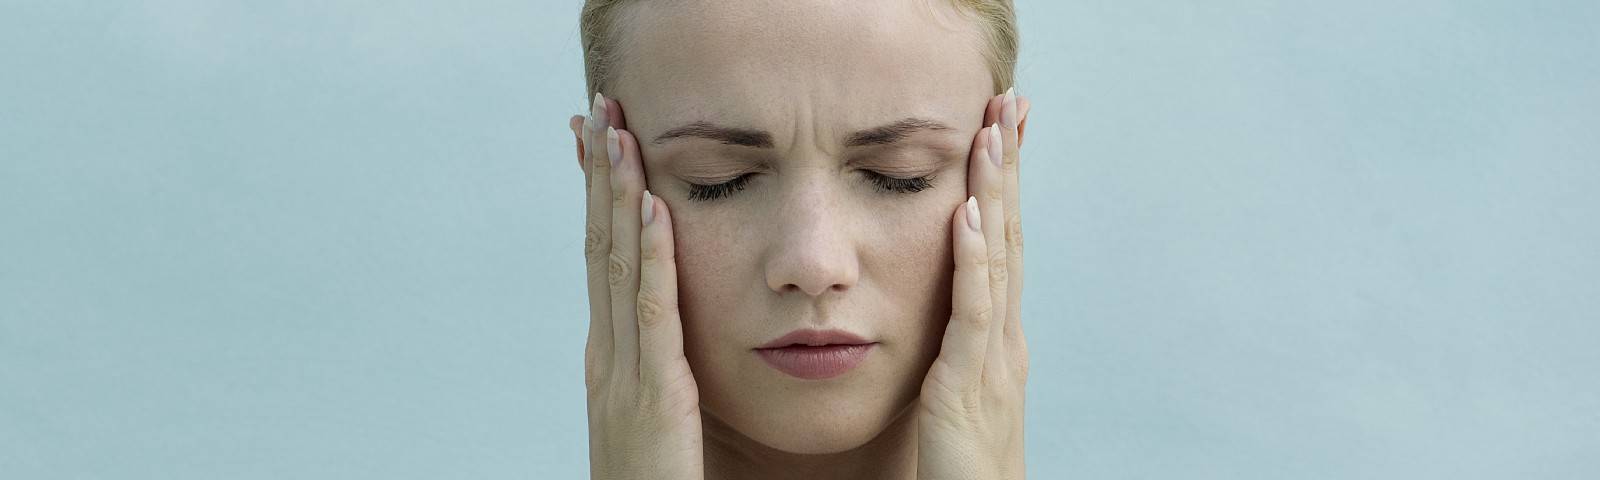 Приступы мигрени: как избавиться от головной боли? | medboli.ru